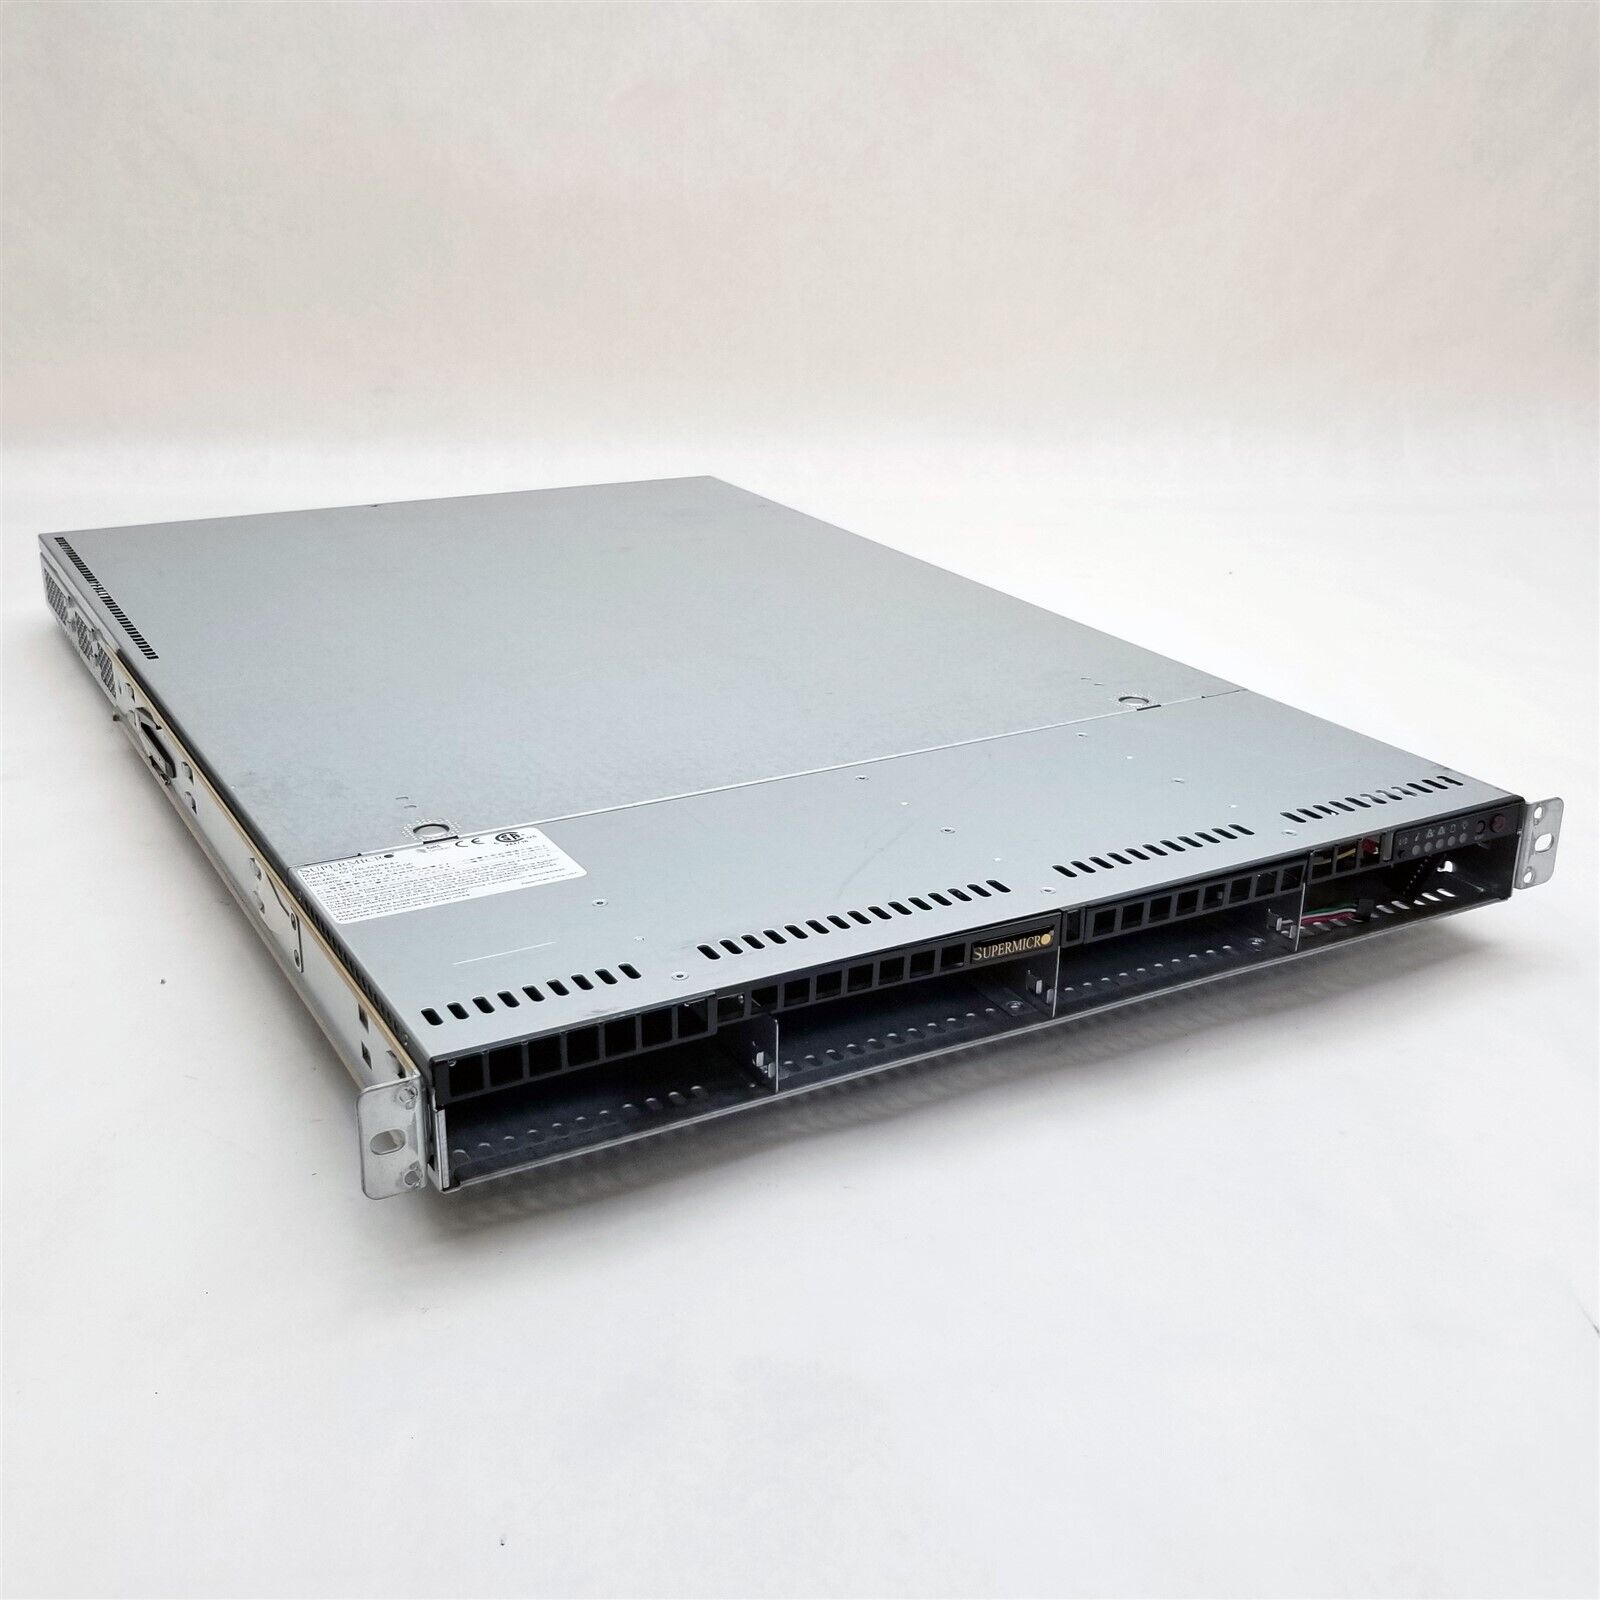 Supermicro 818-7 4-LFF X9DRW-3LN4F+ 2*E5-2630 2.3GHz 16GB RAM *No HDD* 1U Server